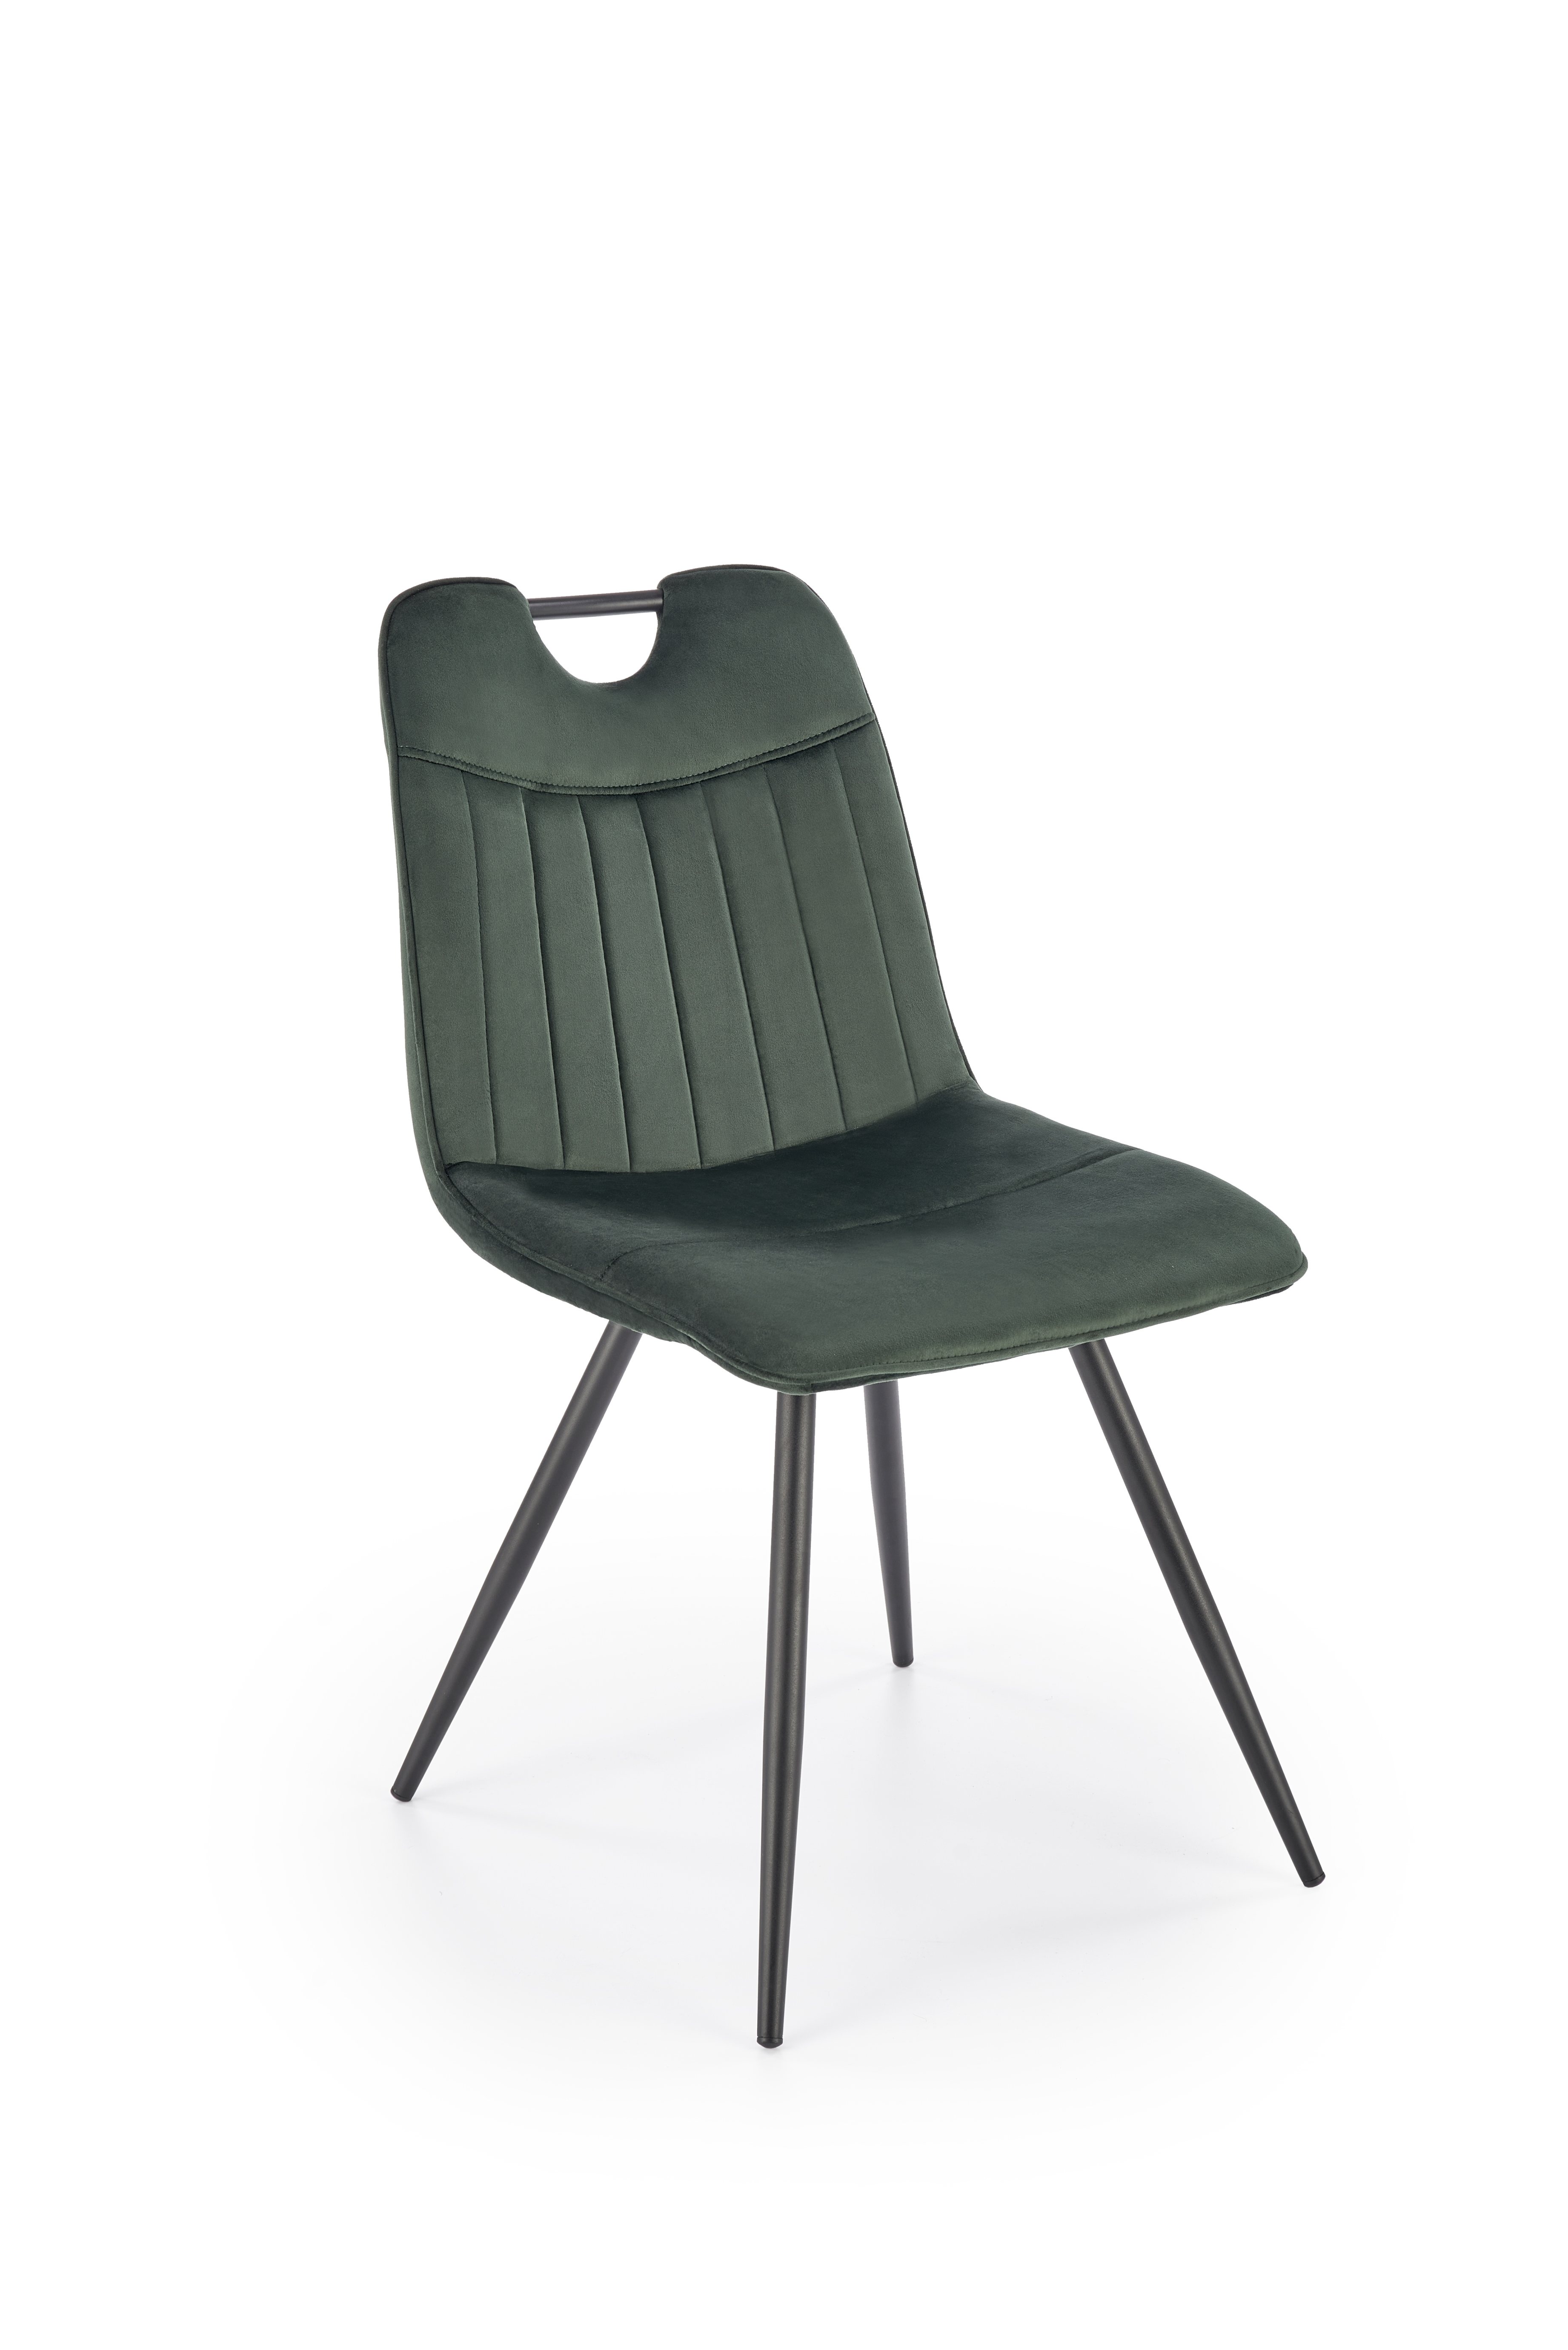 K521 Židle tmavý Zelený k521 Židle tmavý Zelený